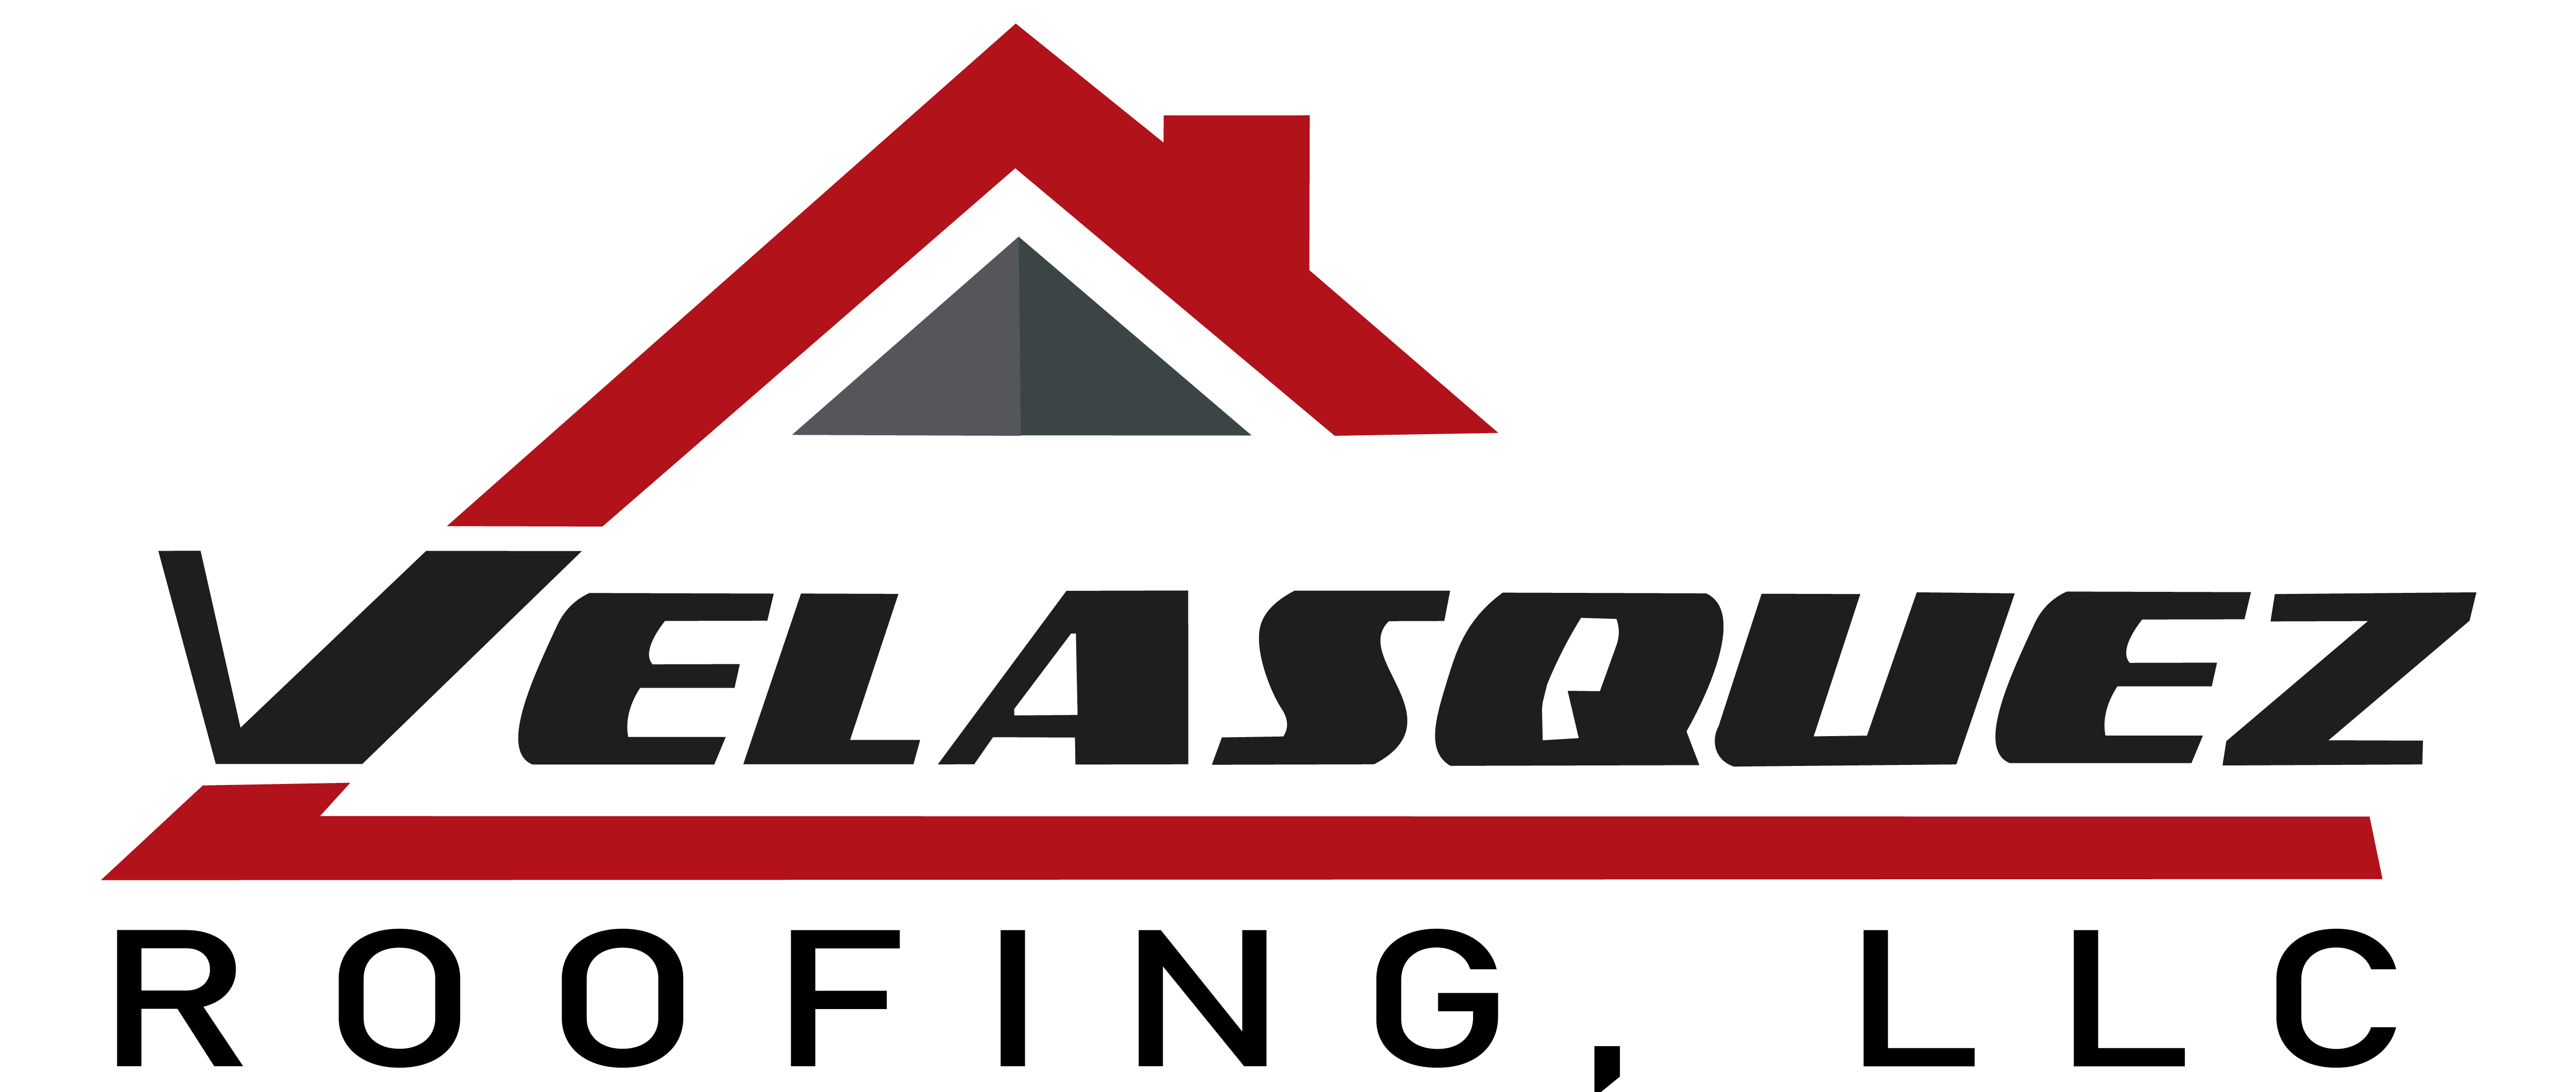 Velasquez Roofing Llc Logo